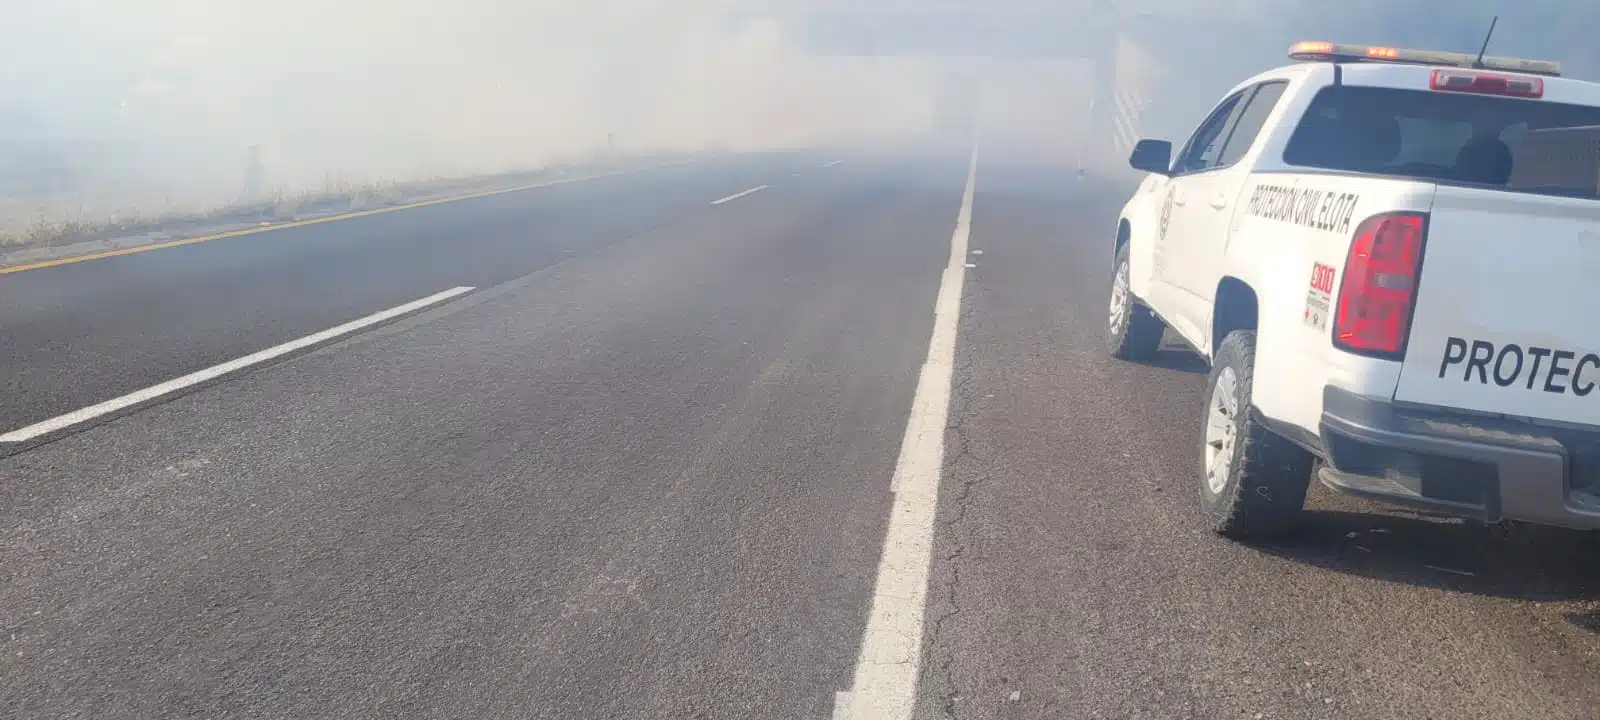 Camioneta de Protección Civil de Elota en el lugar de un incendio por la autopista Mazatlán-Culiacán